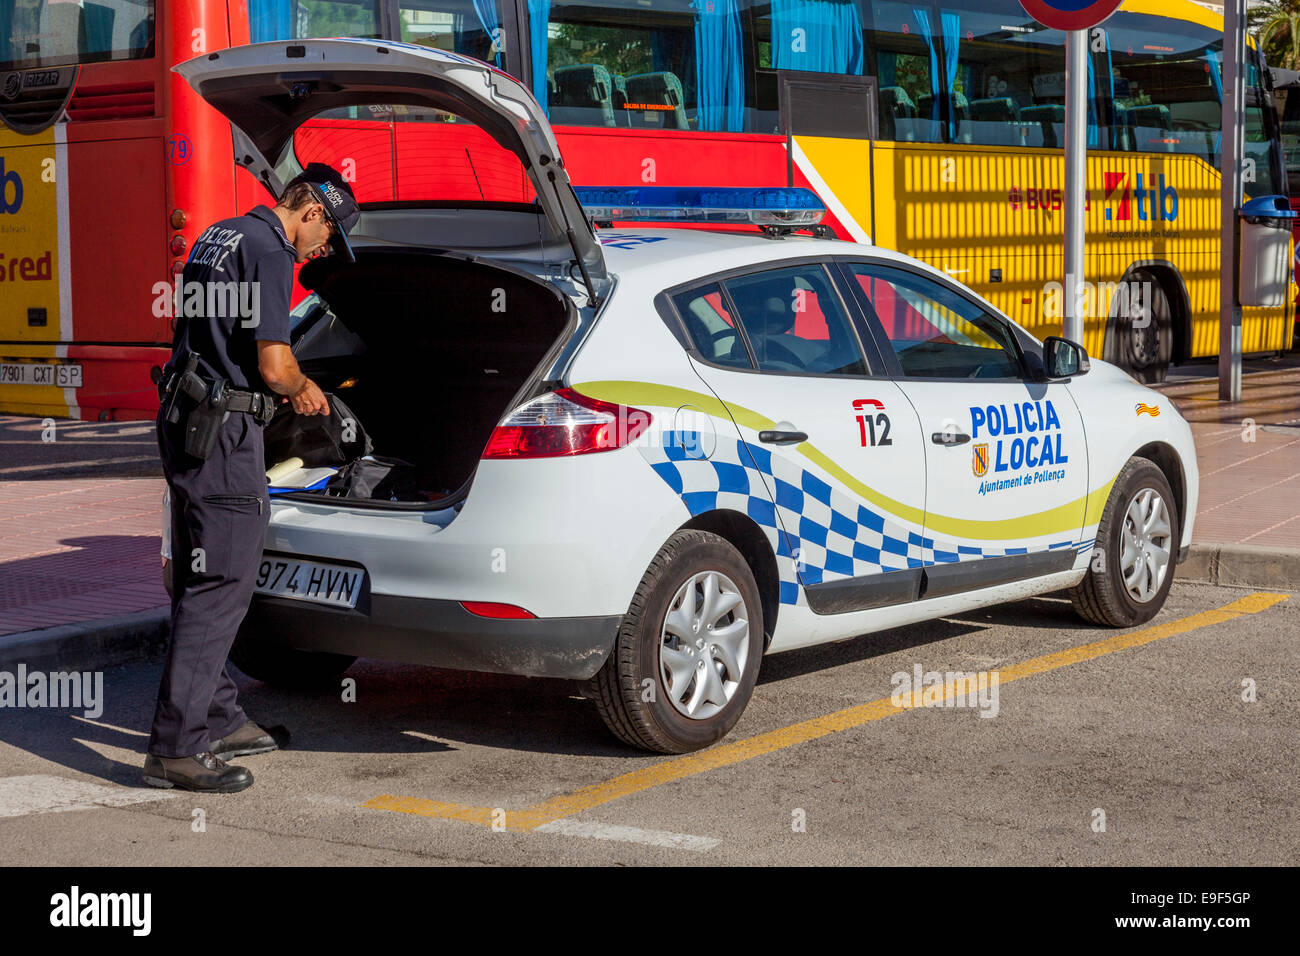 Police Officer, Puerto de Pollensa, Mallorca - Spain Stock Photo - Alamy